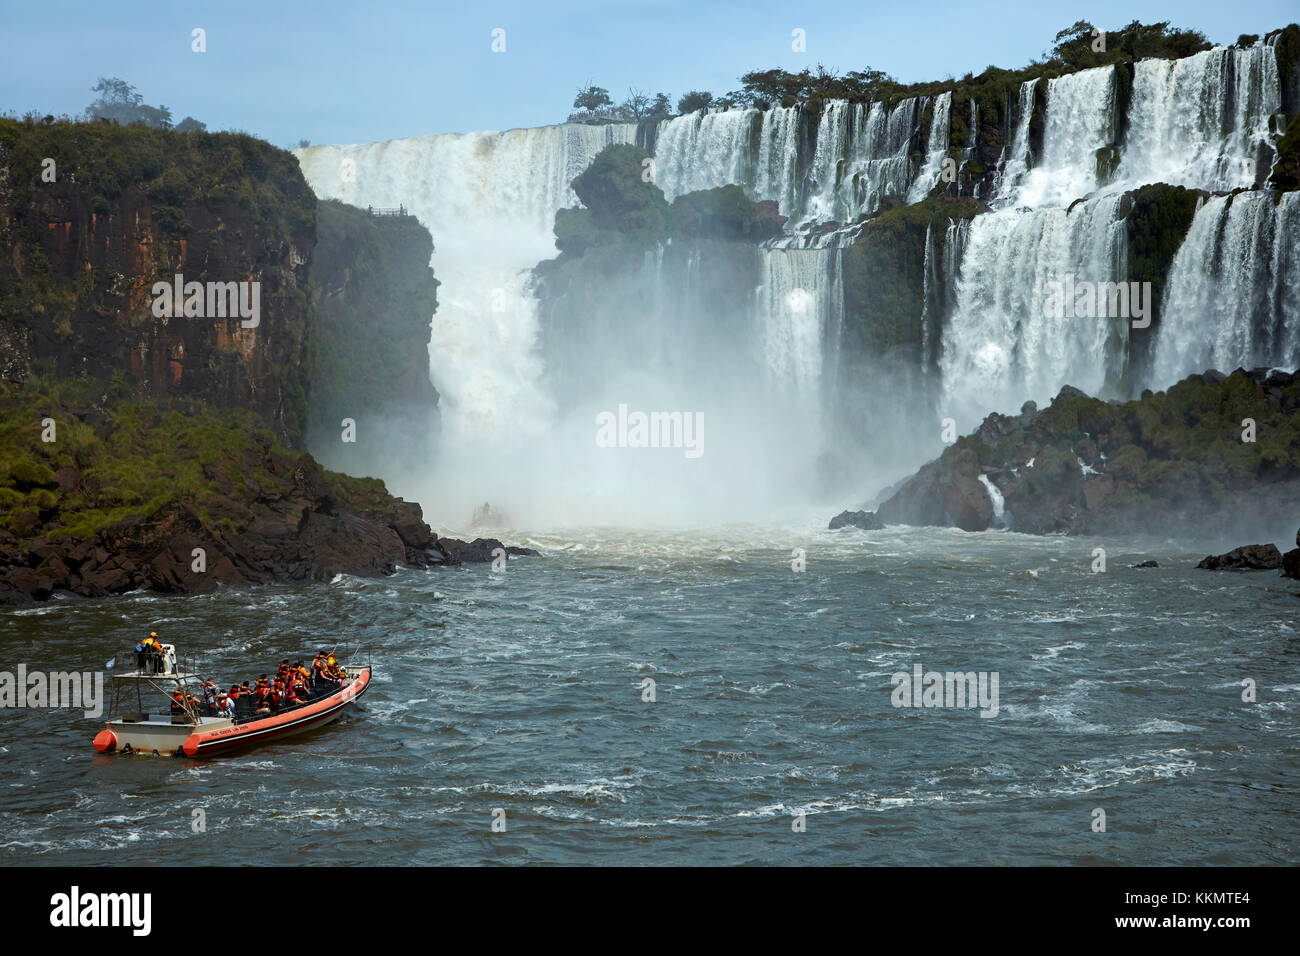 Turisti in barca che passa sotto le cascate Iguazu, Argentina, Sud America Foto Stock